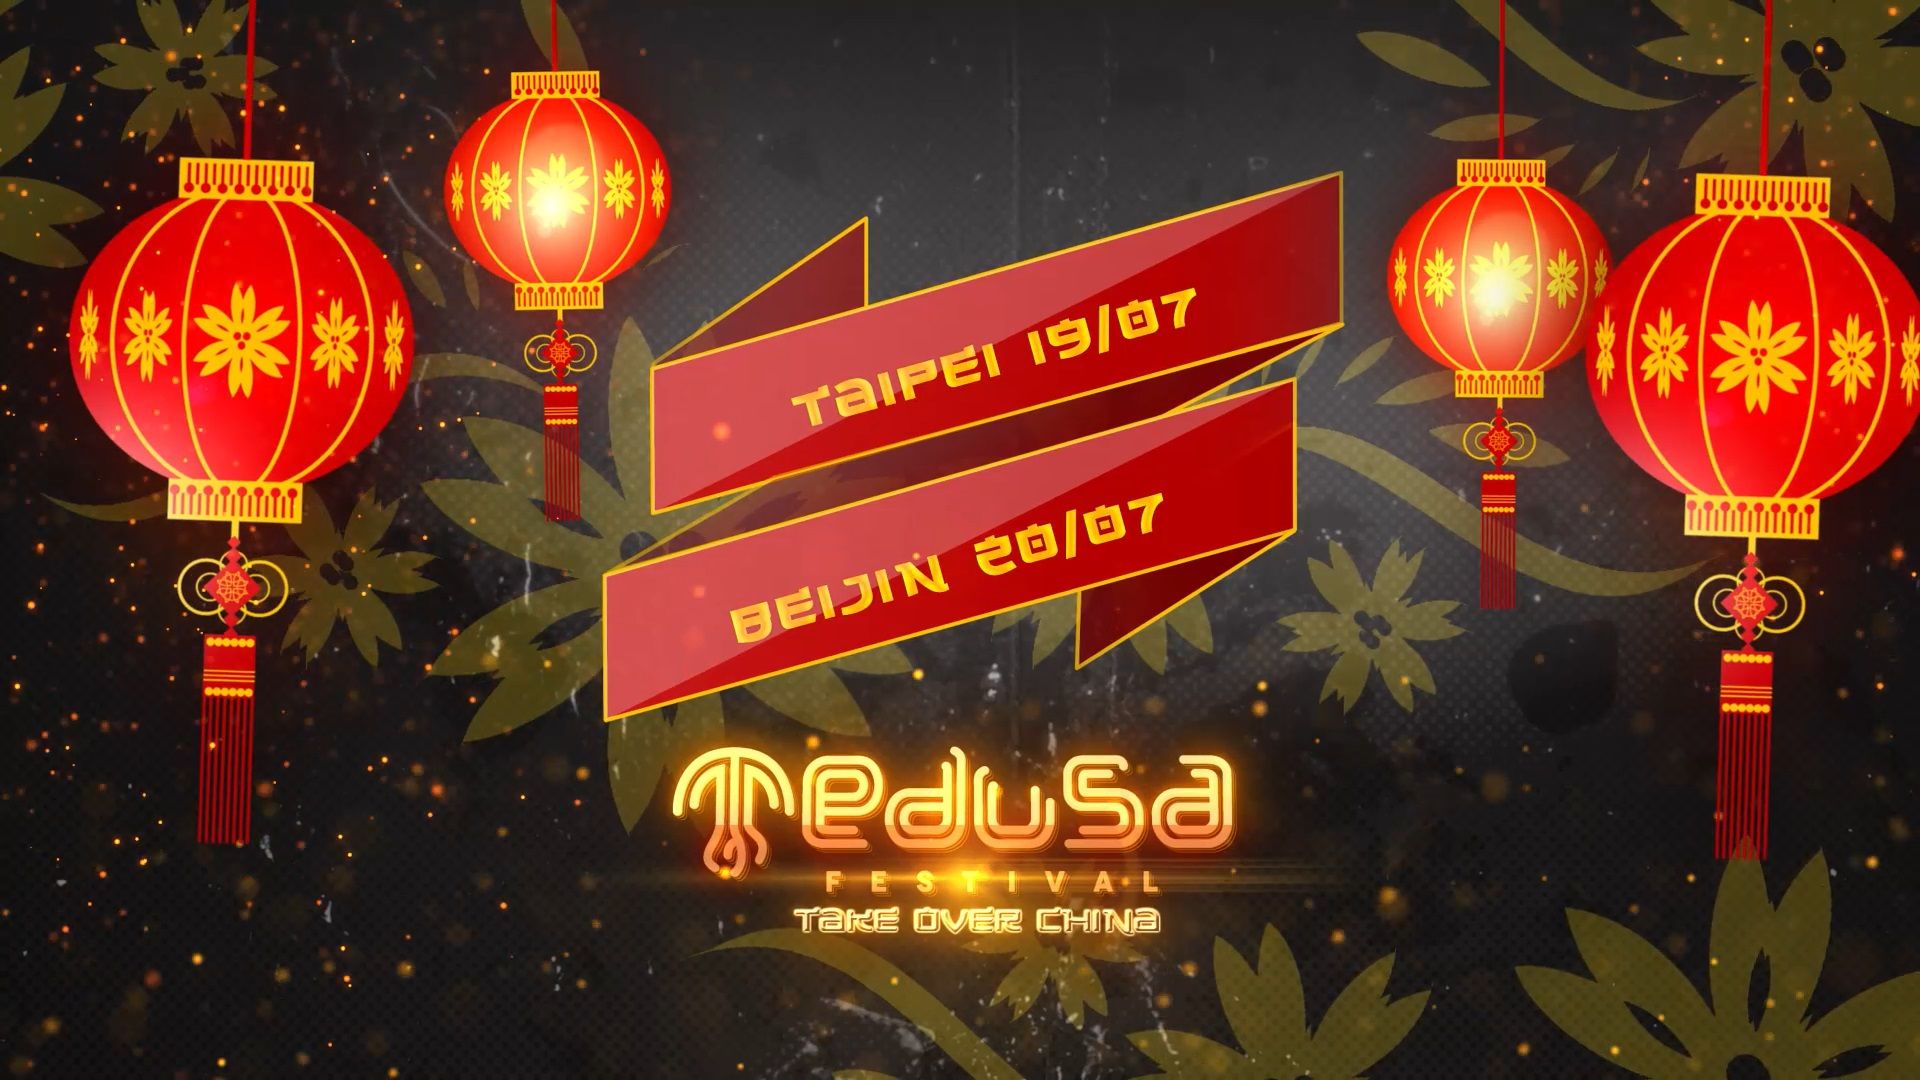 Medusa Festival Asia